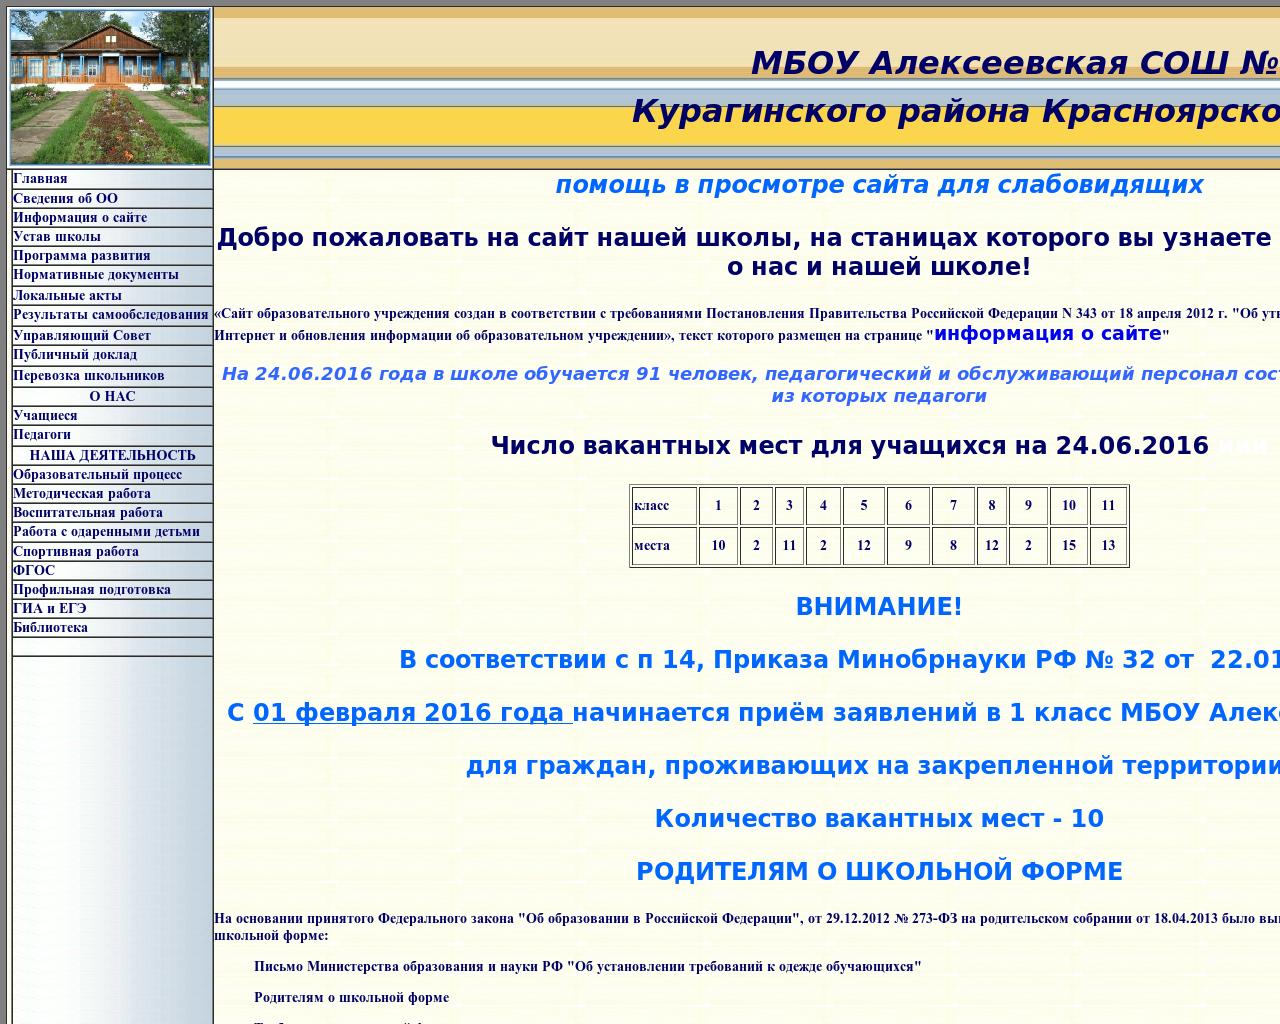 Изображение сайта as9.ru в разрешении 1280x1024